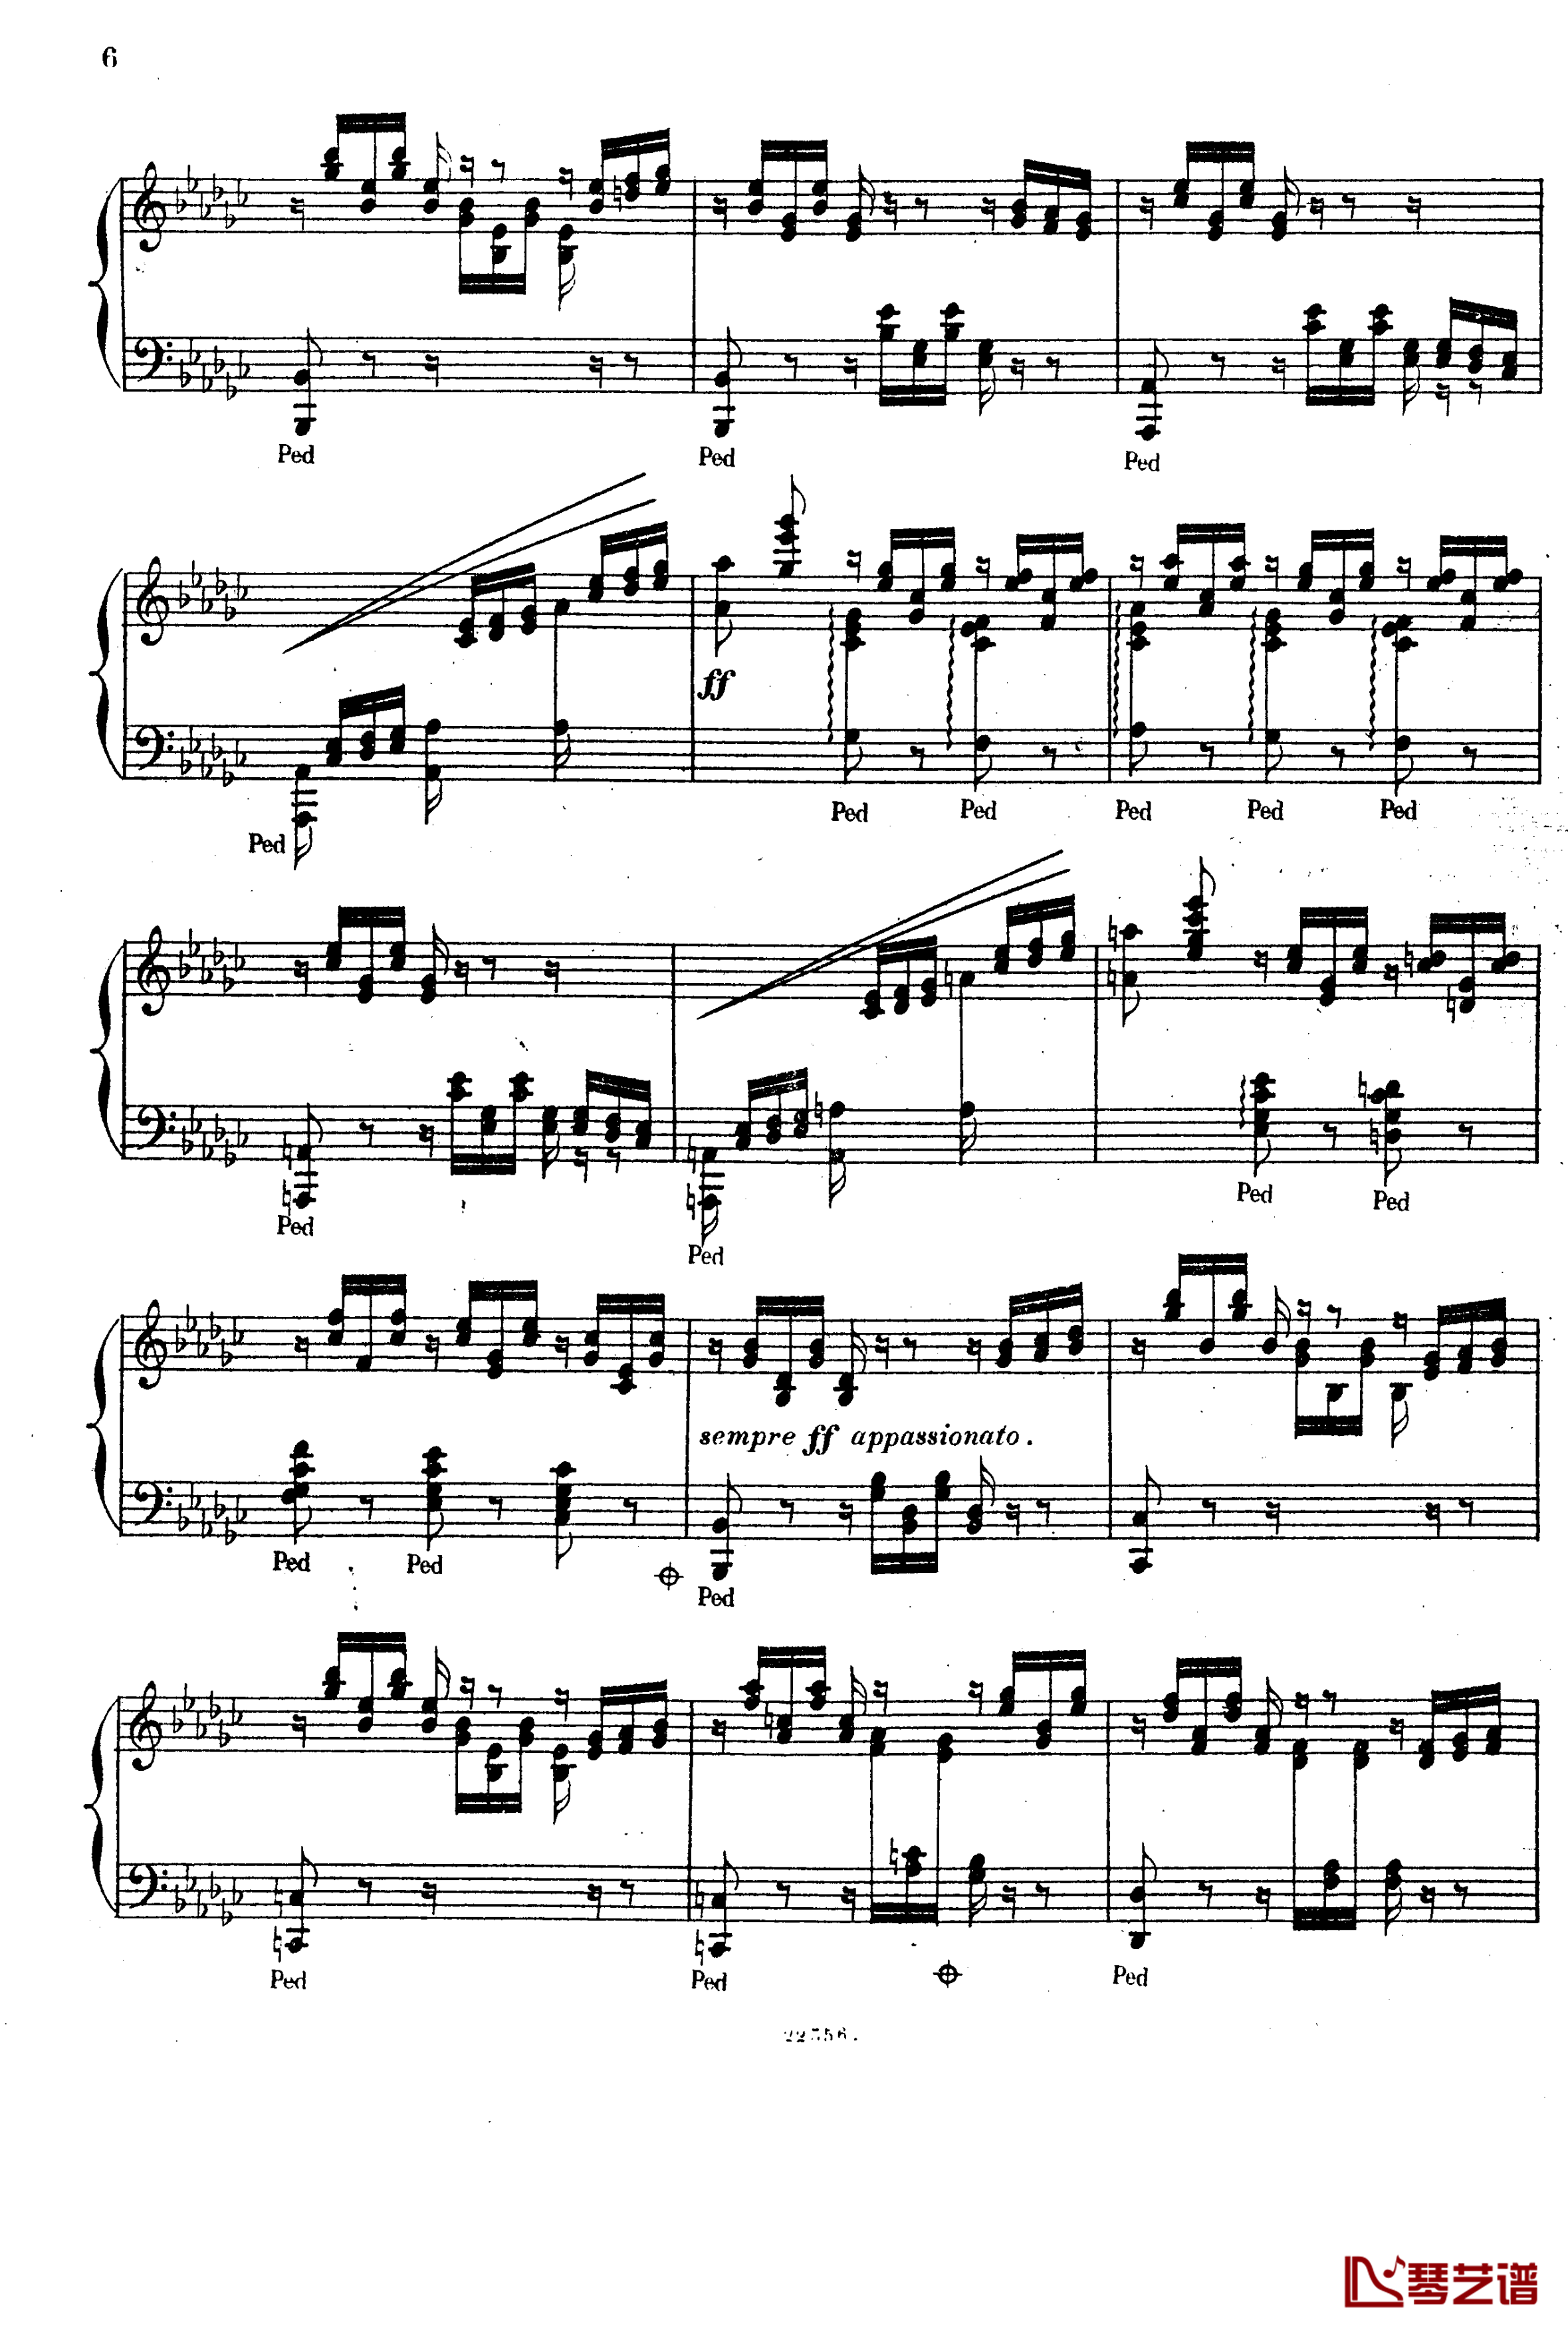  前奏曲与赋格 Op.6钢琴谱-斯甘巴蒂